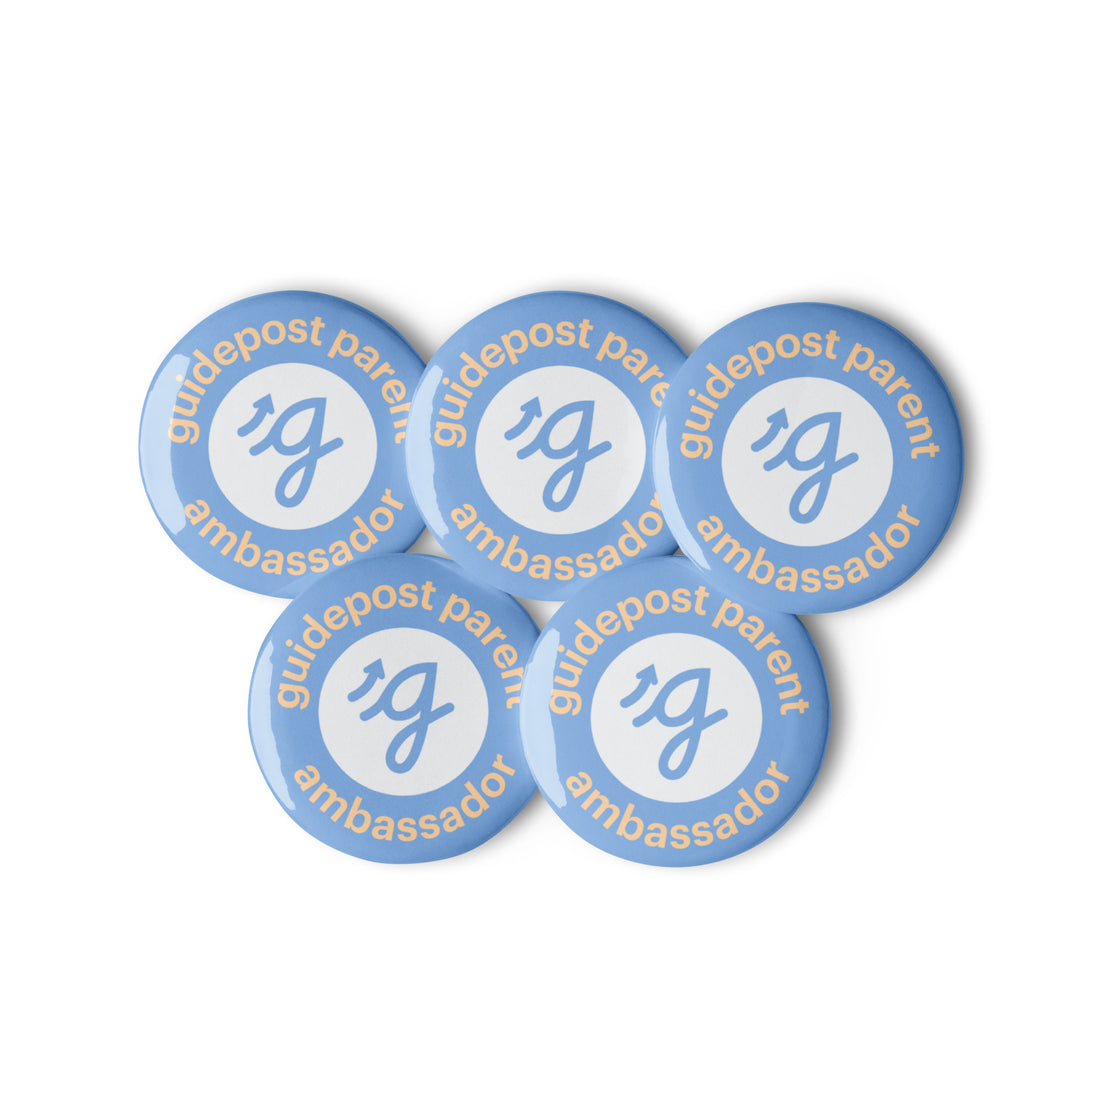 Guidepost Promo - Parent Ambassador Set of pin buttons